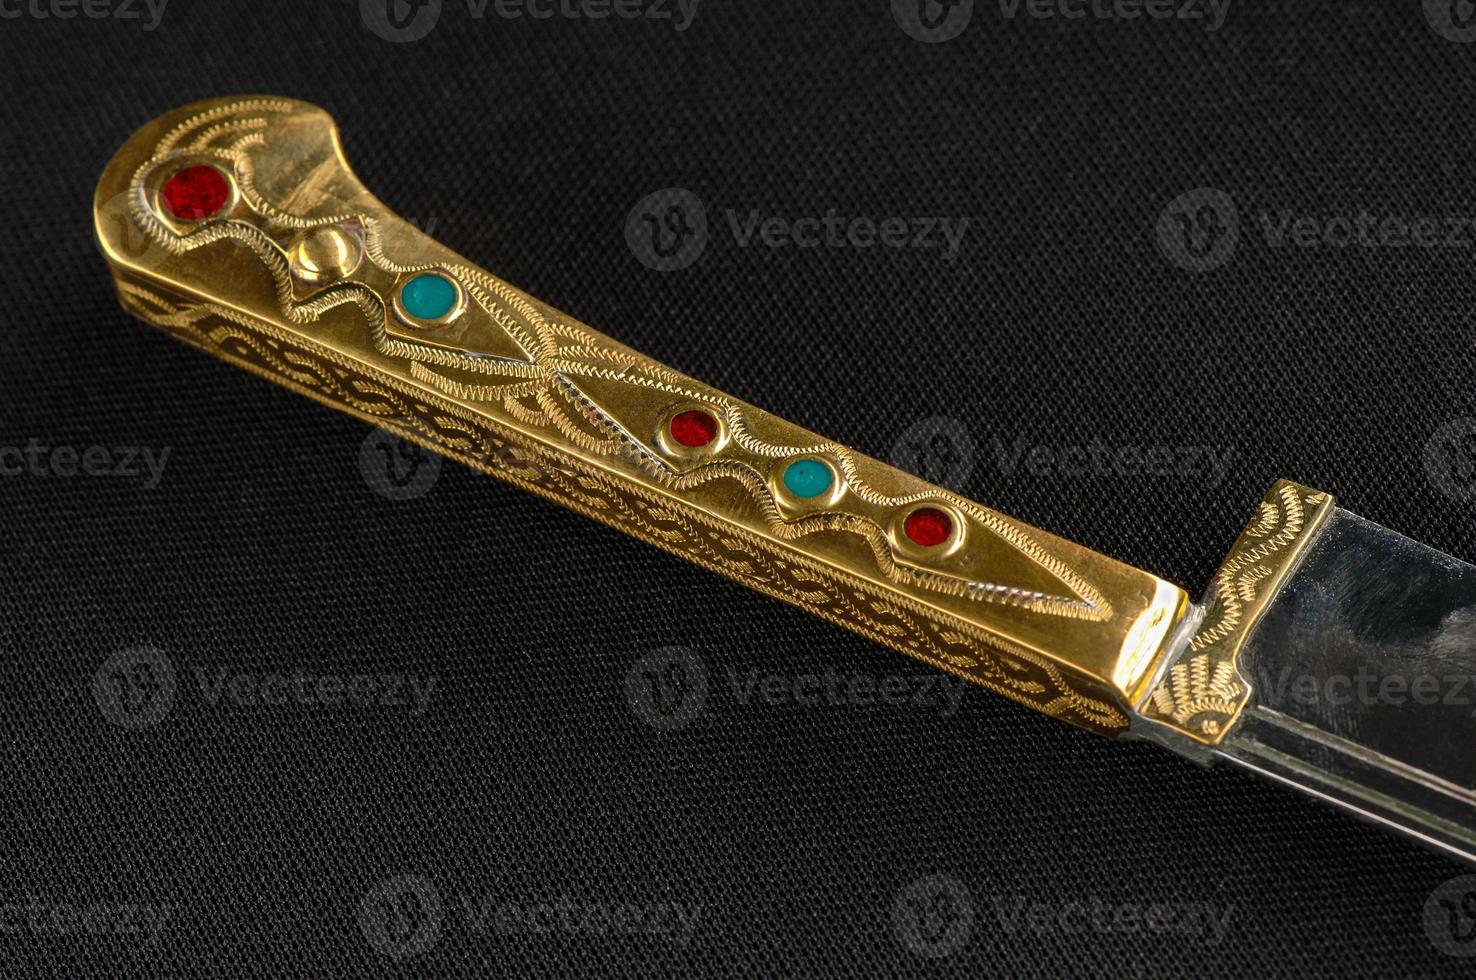 faca oriental decorativa decorada com pedras preciosas foto